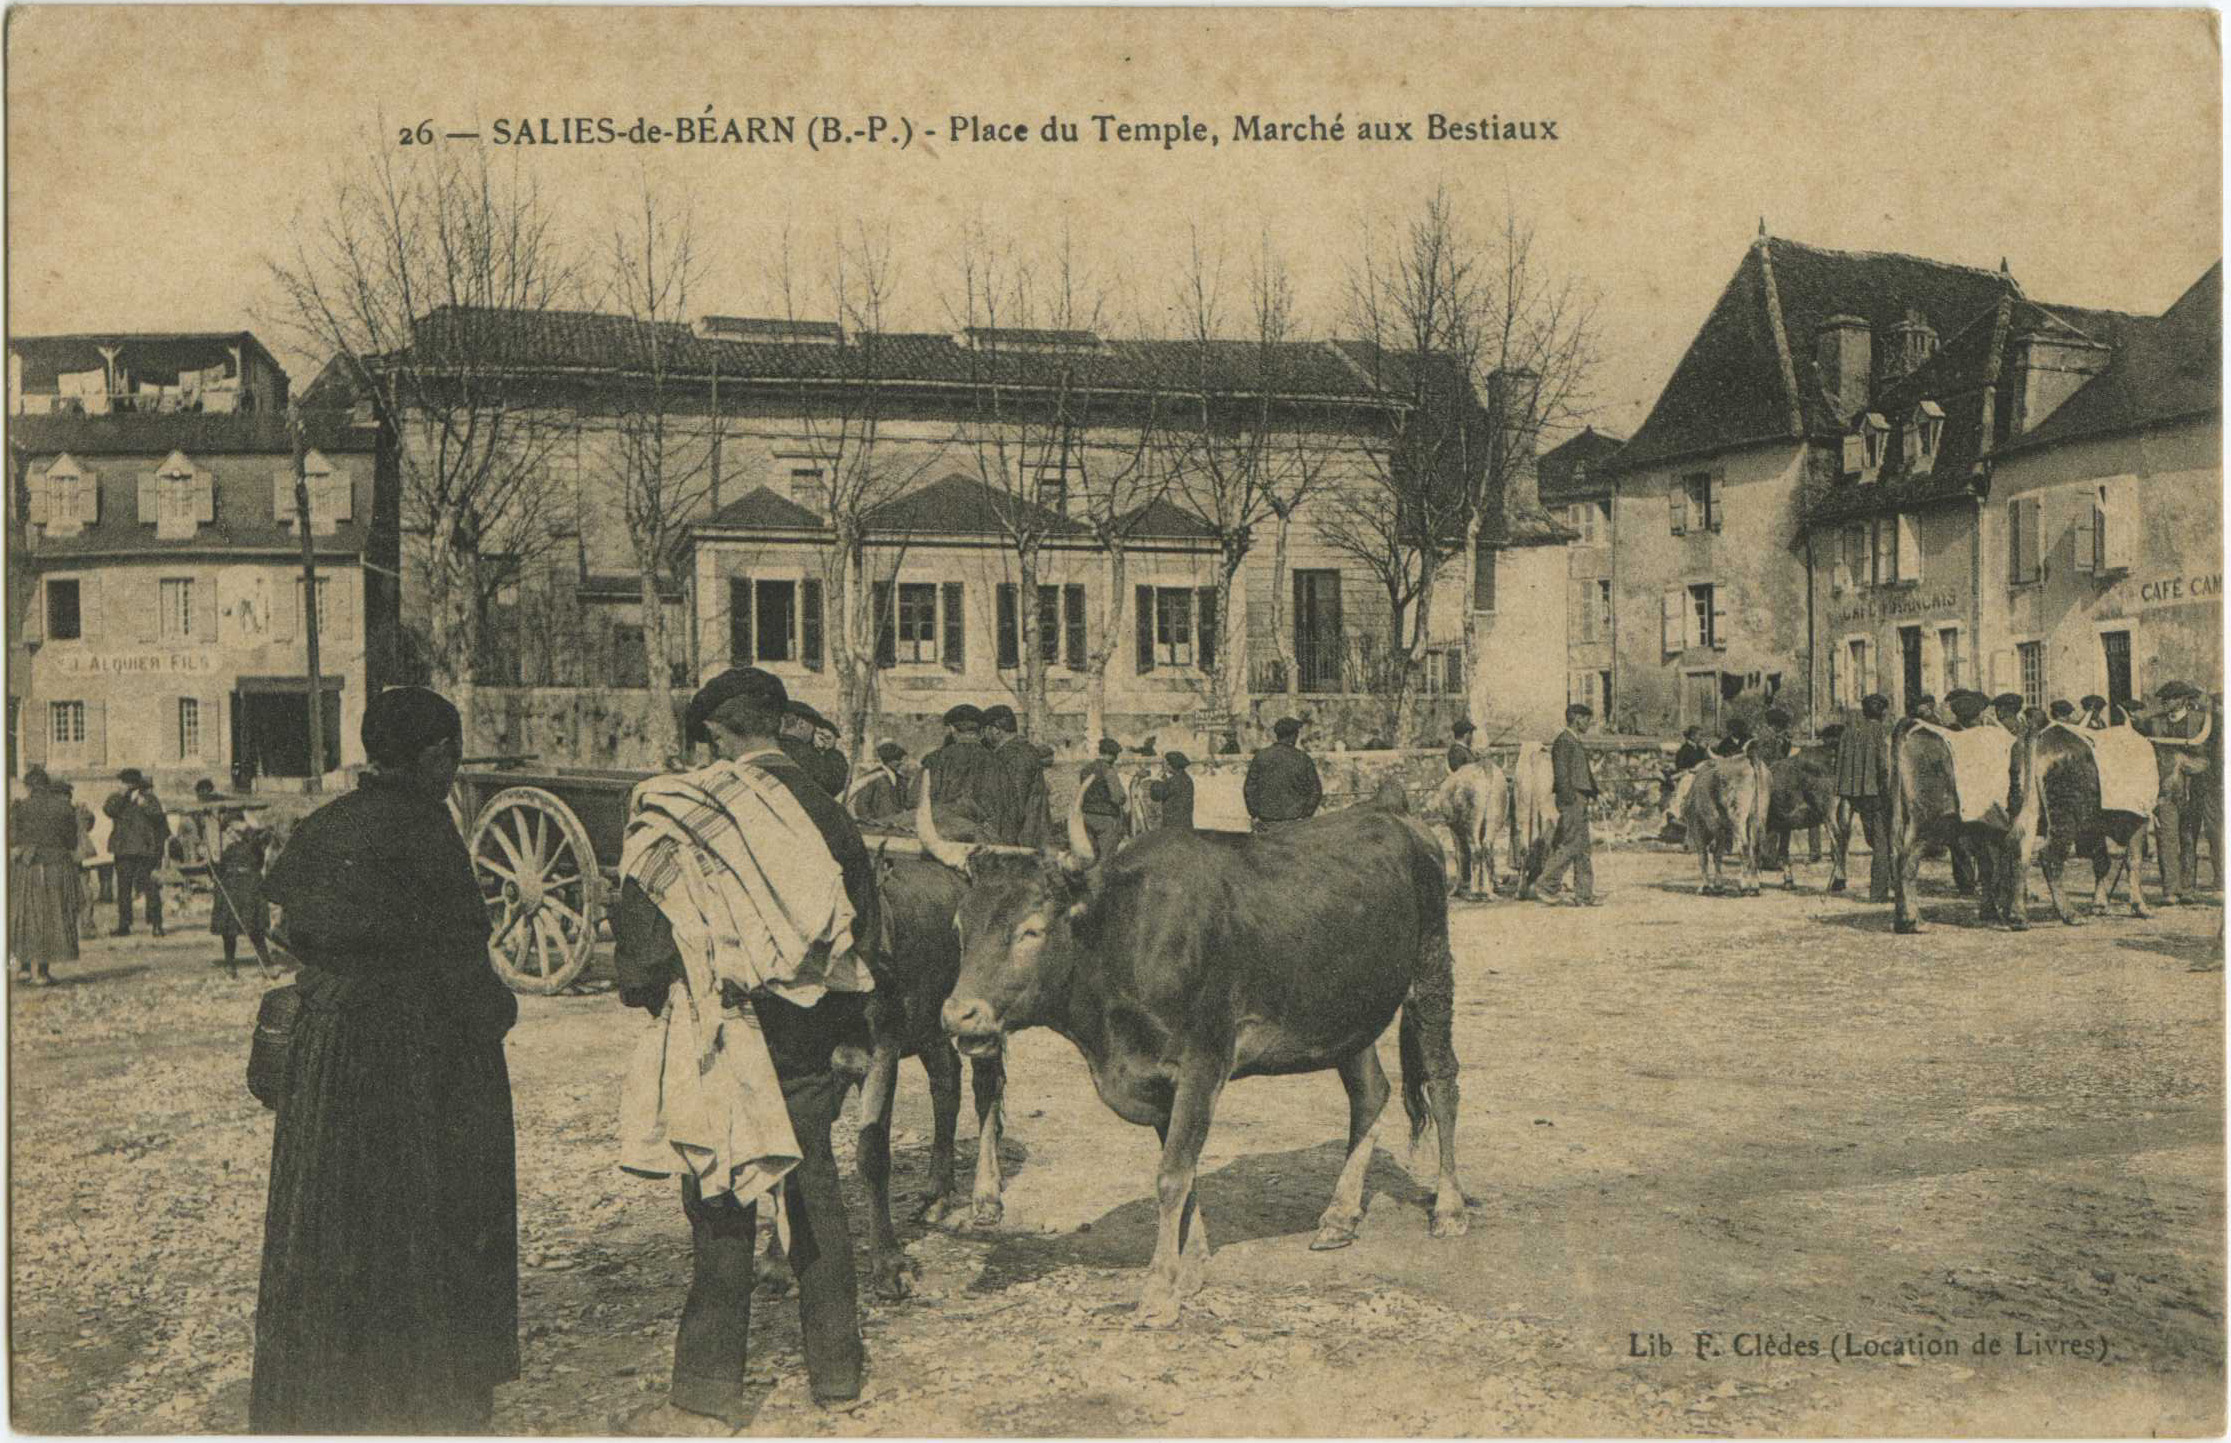 Salies-de-Béarn - Place du Temple, Marché aux Bestiaux